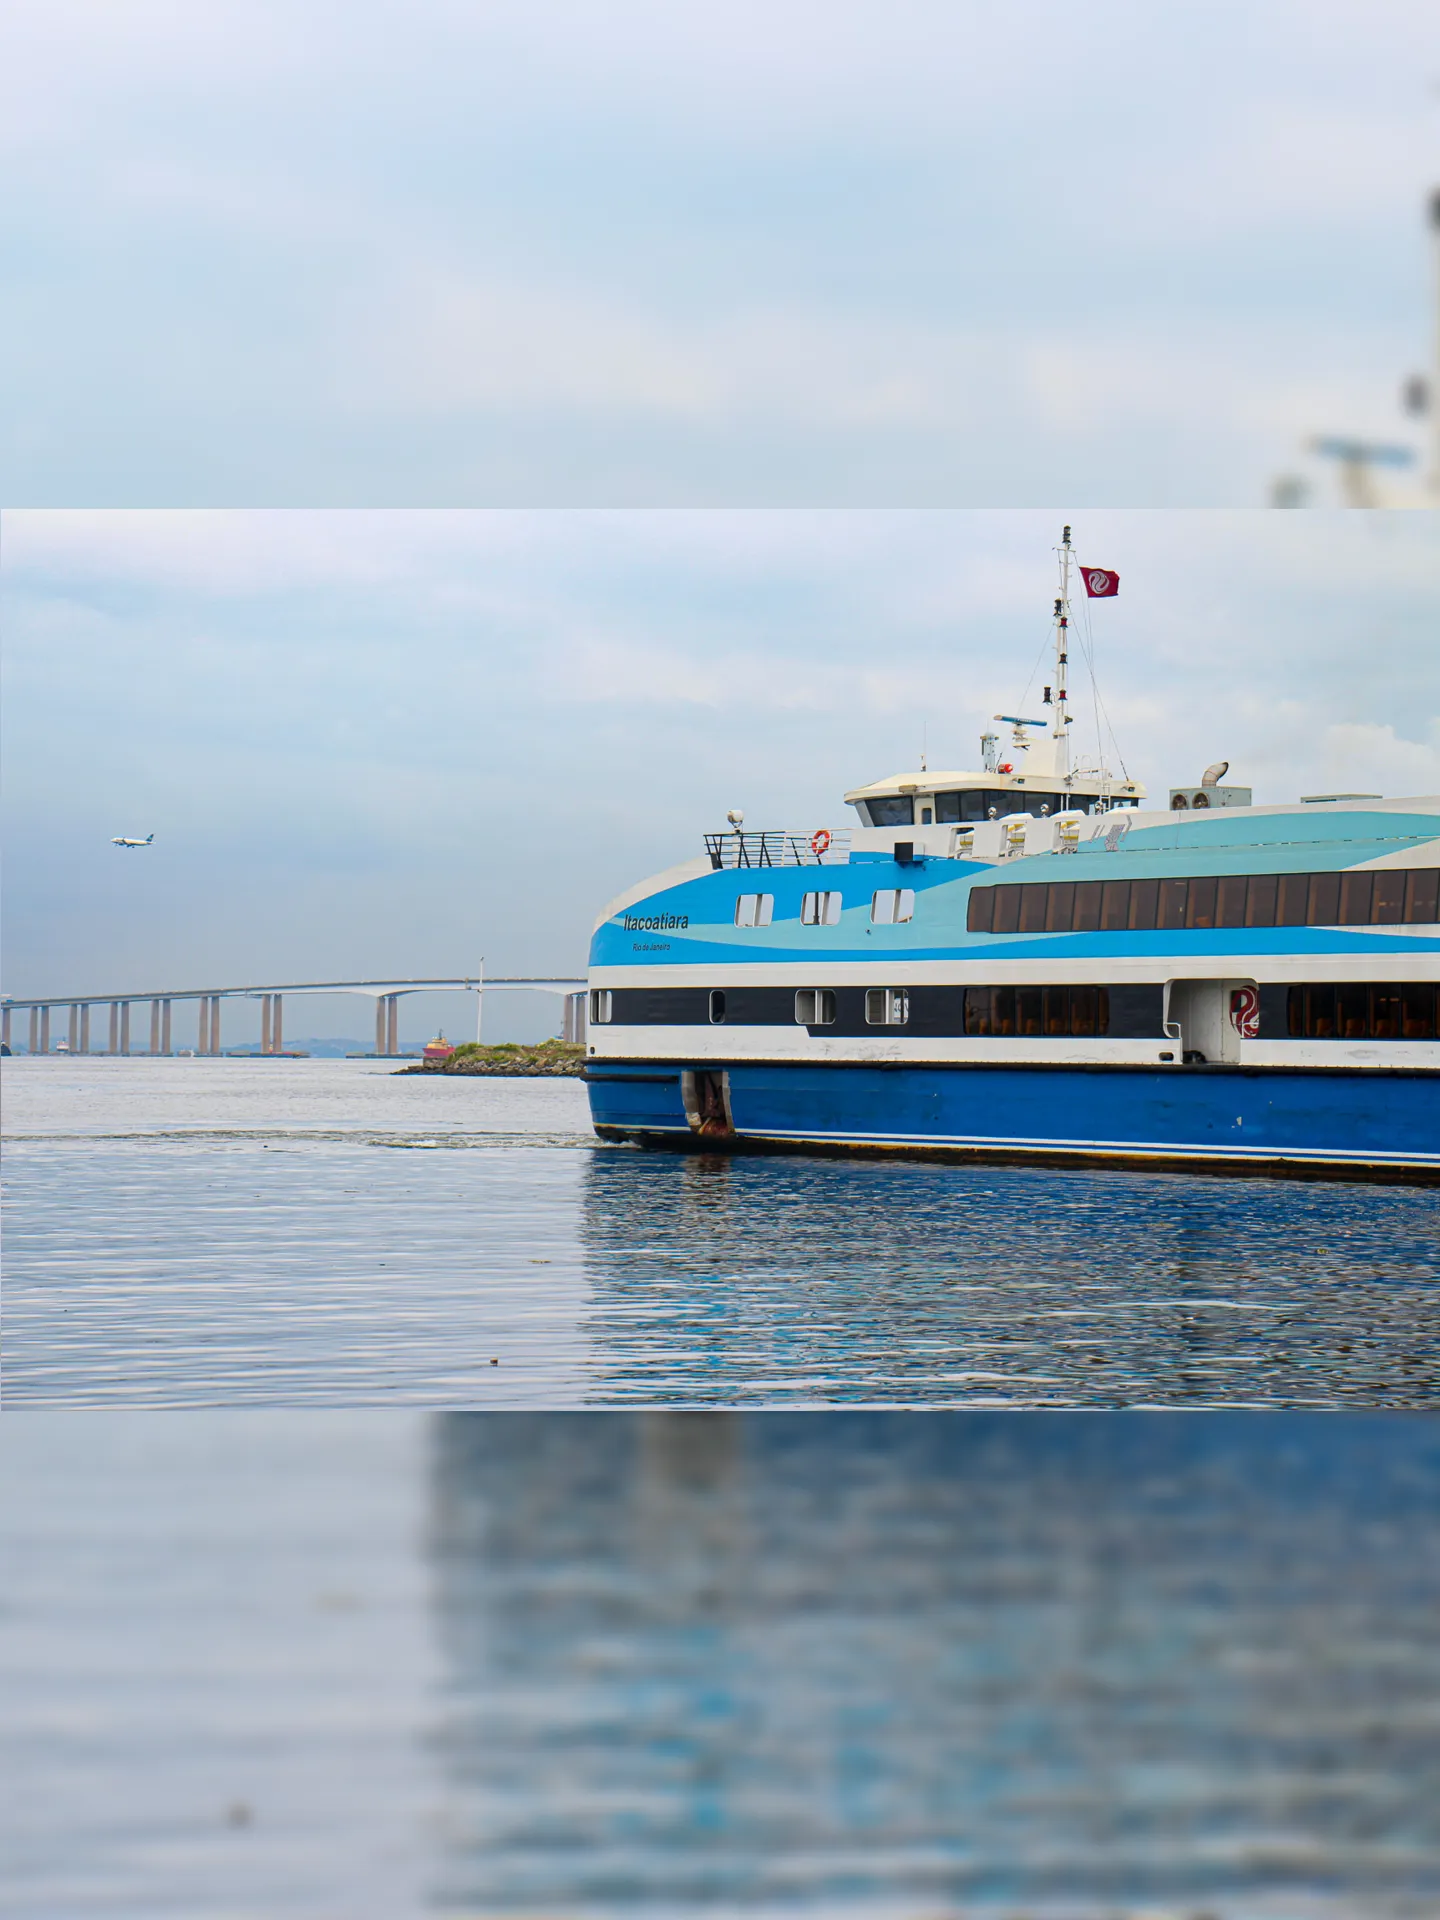 Segundo a CCR Barcas, as contratações acontecerão de acordo com a disponibilidade de vagas